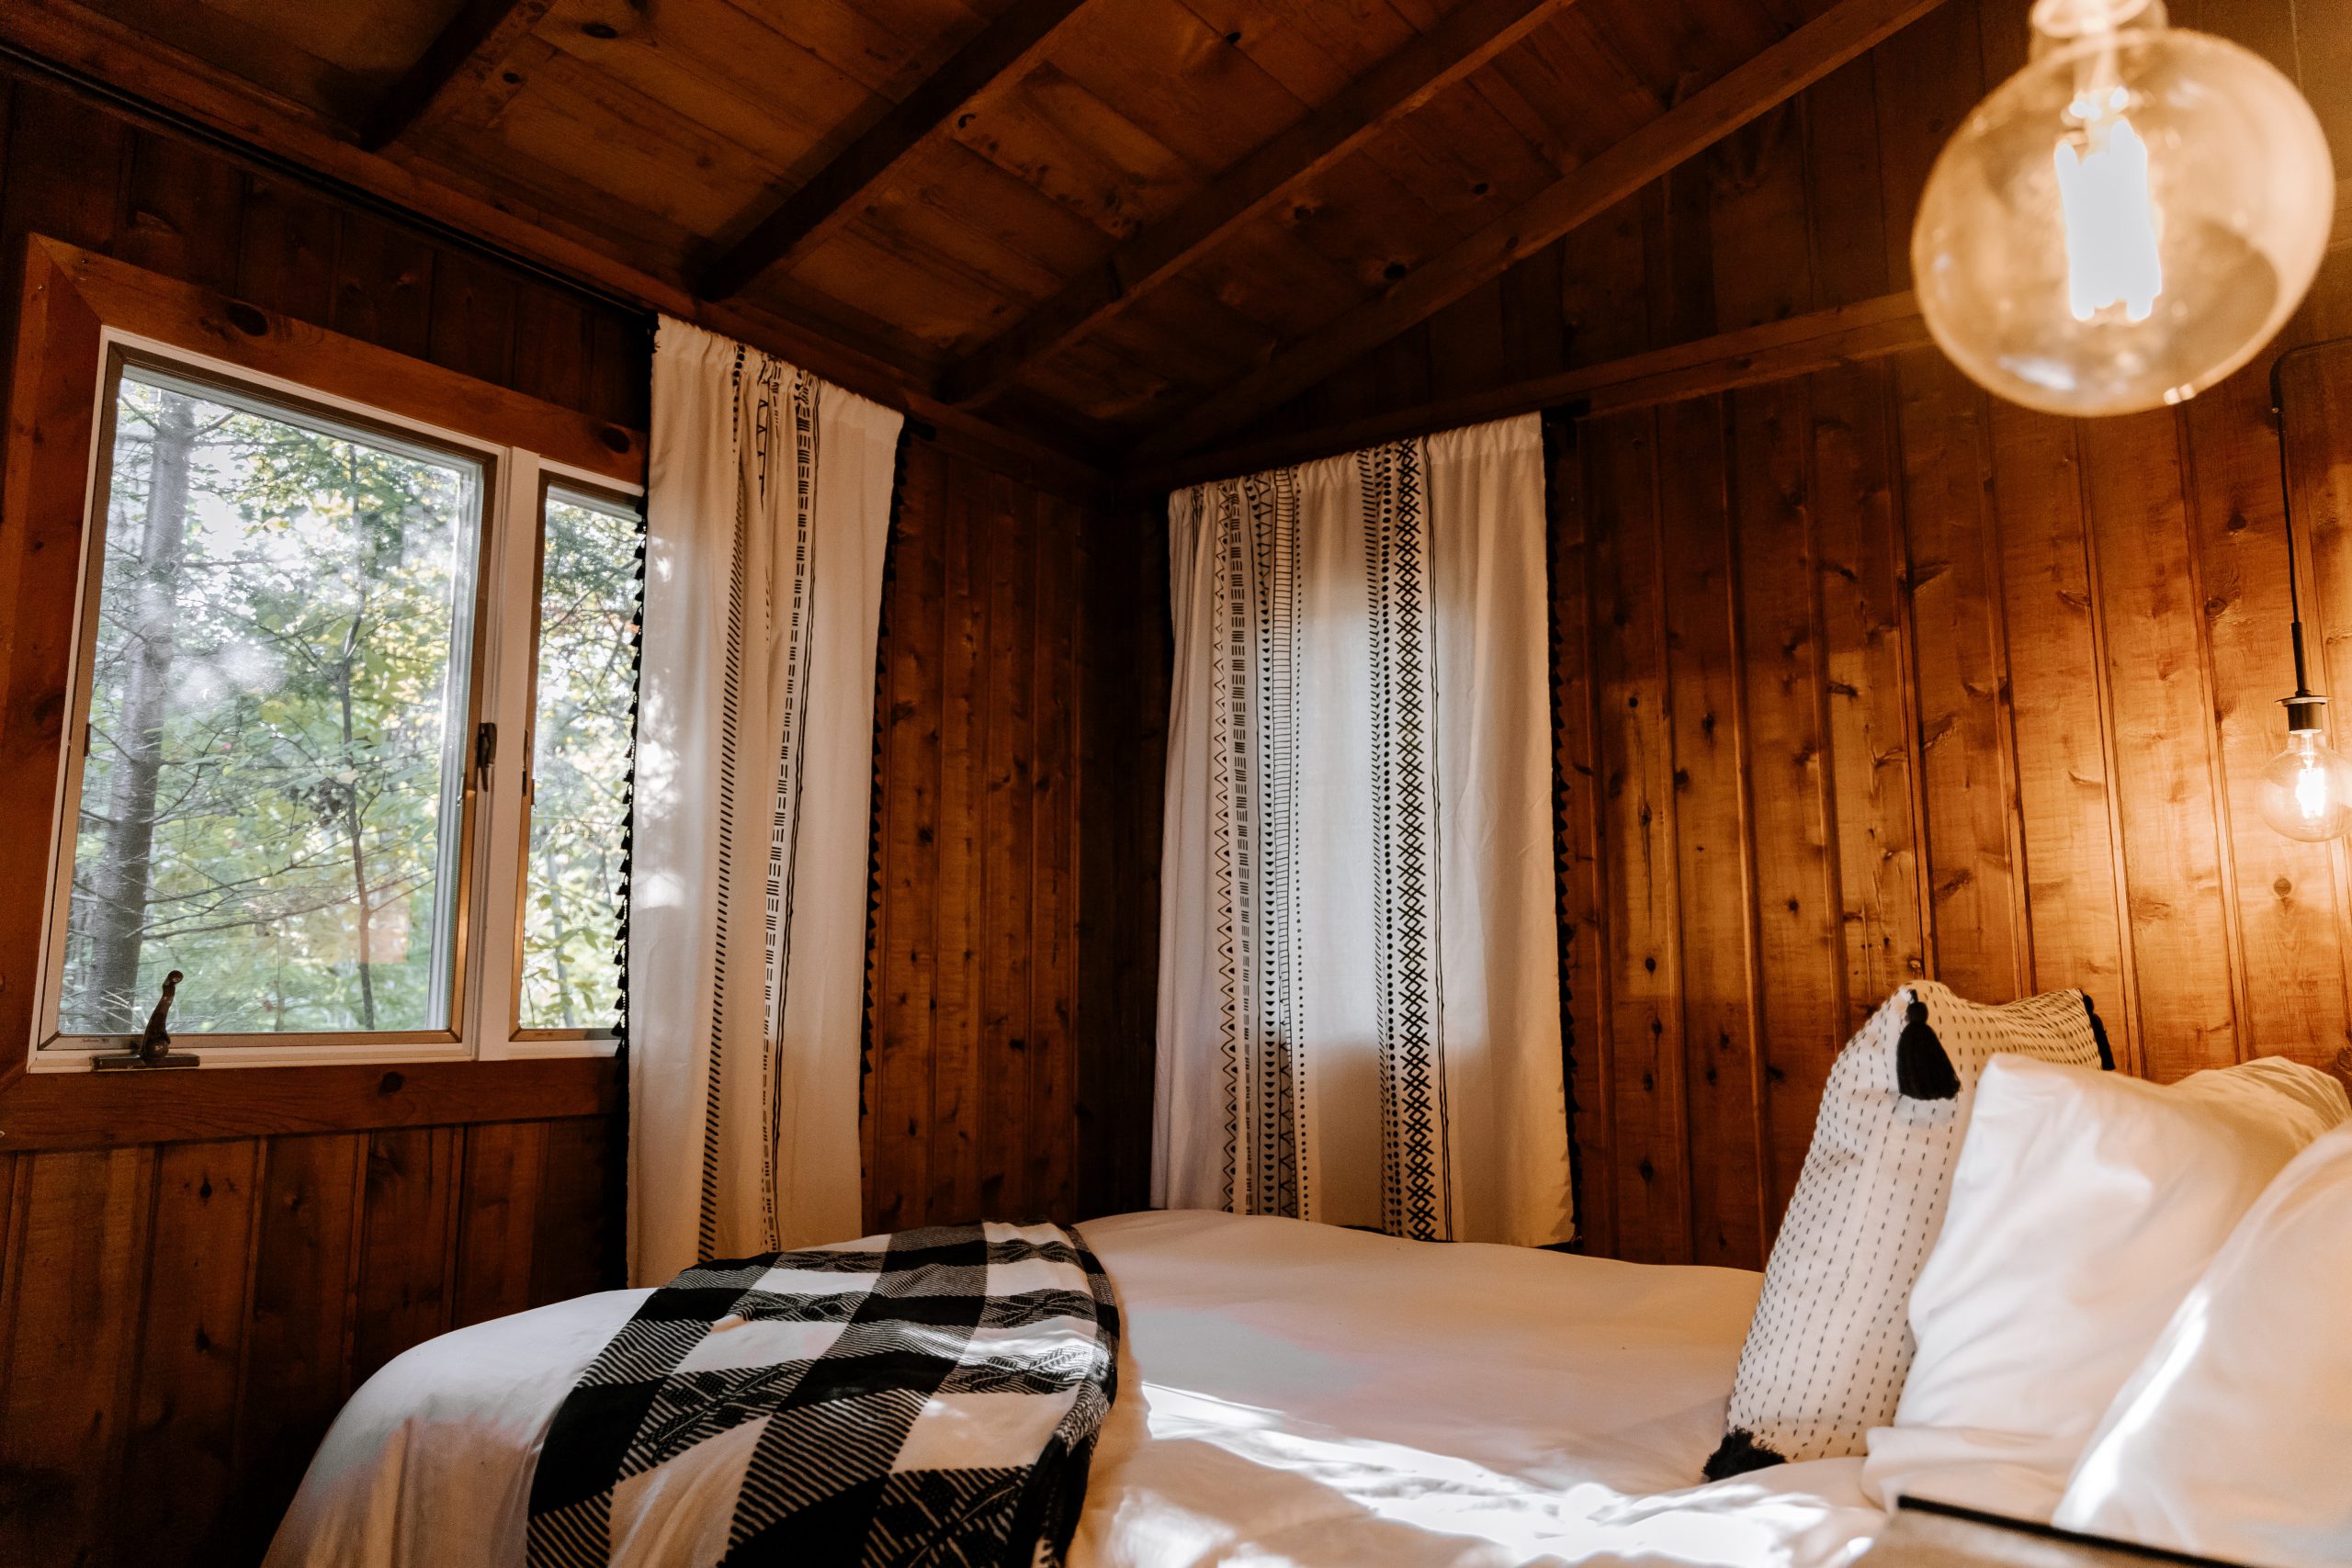 Thiết kế phòng ngủ homestay - Cách decor đẹp mắt, thu hút khách hàng